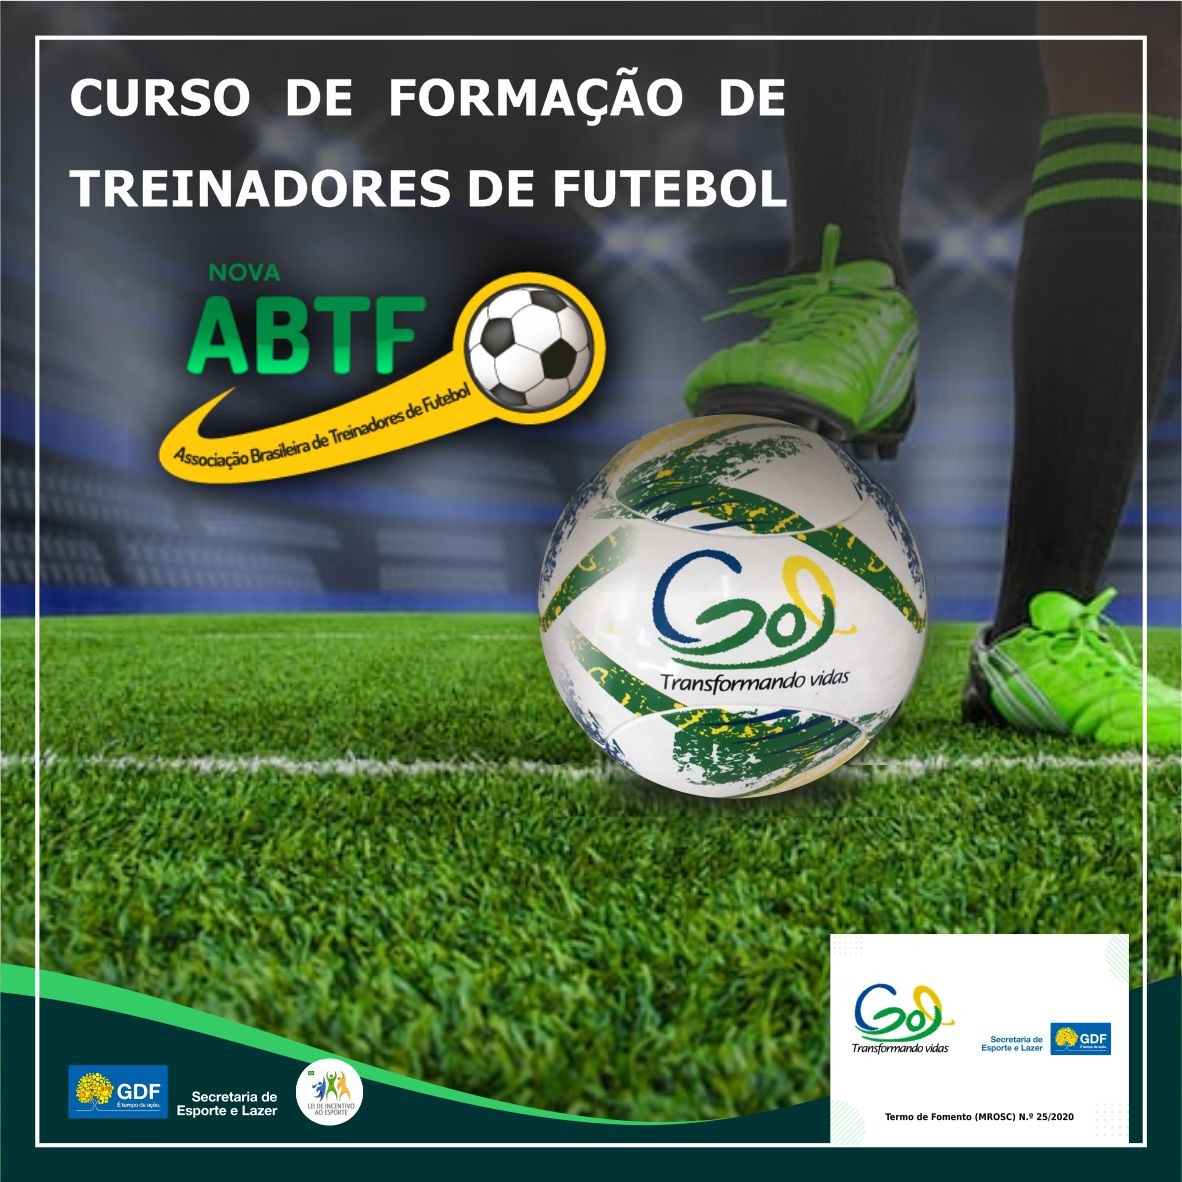 Abtf - Associação Brasileira de Treinadores de Futebol